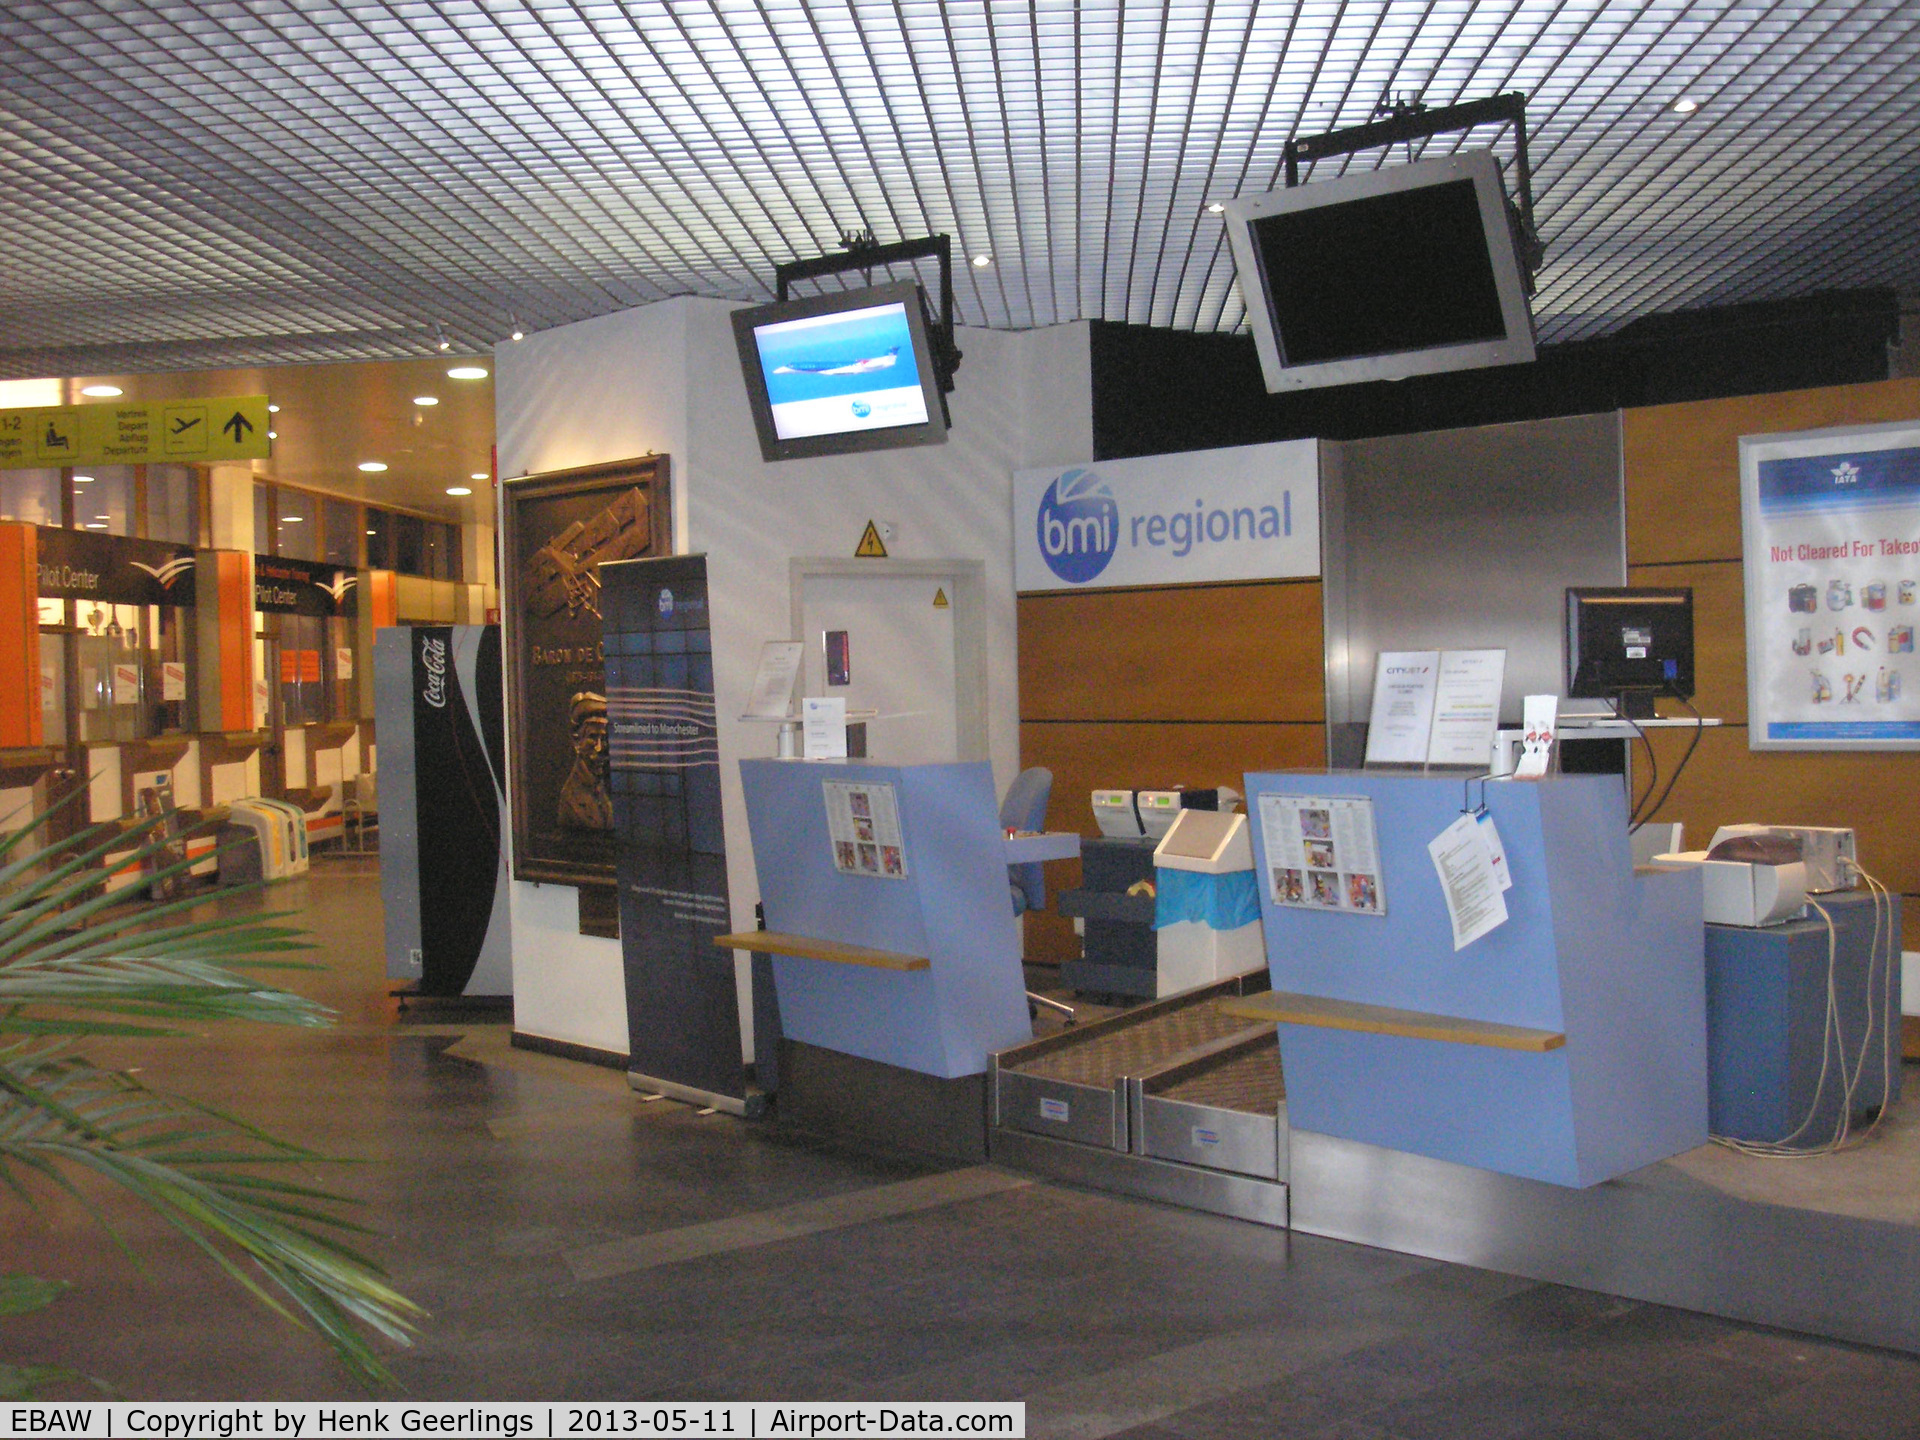 Antwerp International Airport, Antwerp / Deurne, Belgium Belgium (EBAW) - bmi regional check in counter at Deurne / Antwerp airport